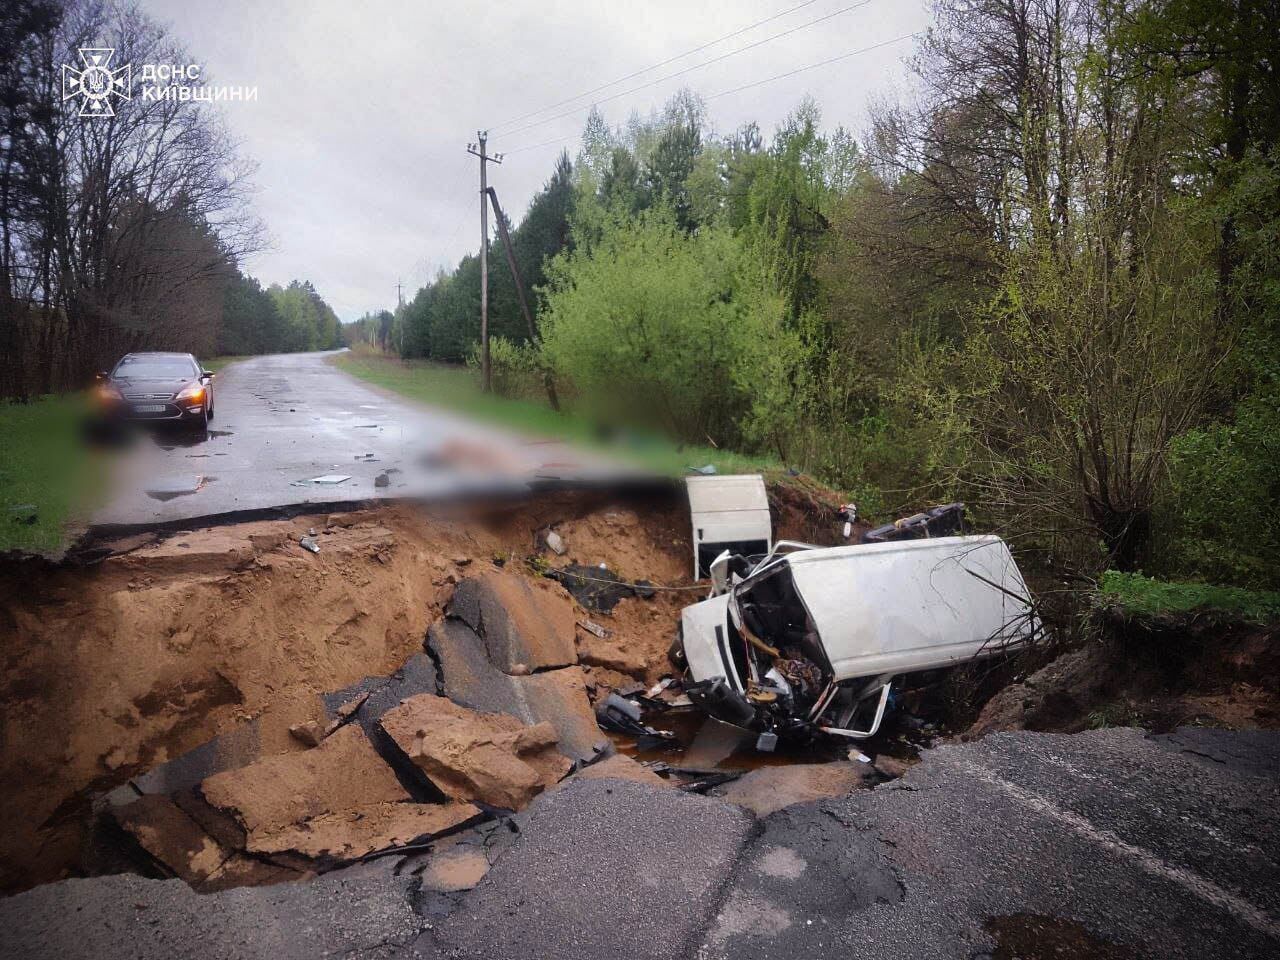 В Киевской области микроавтобус провалился под землю: есть погибшие и пострадавшие. Подробности и фото